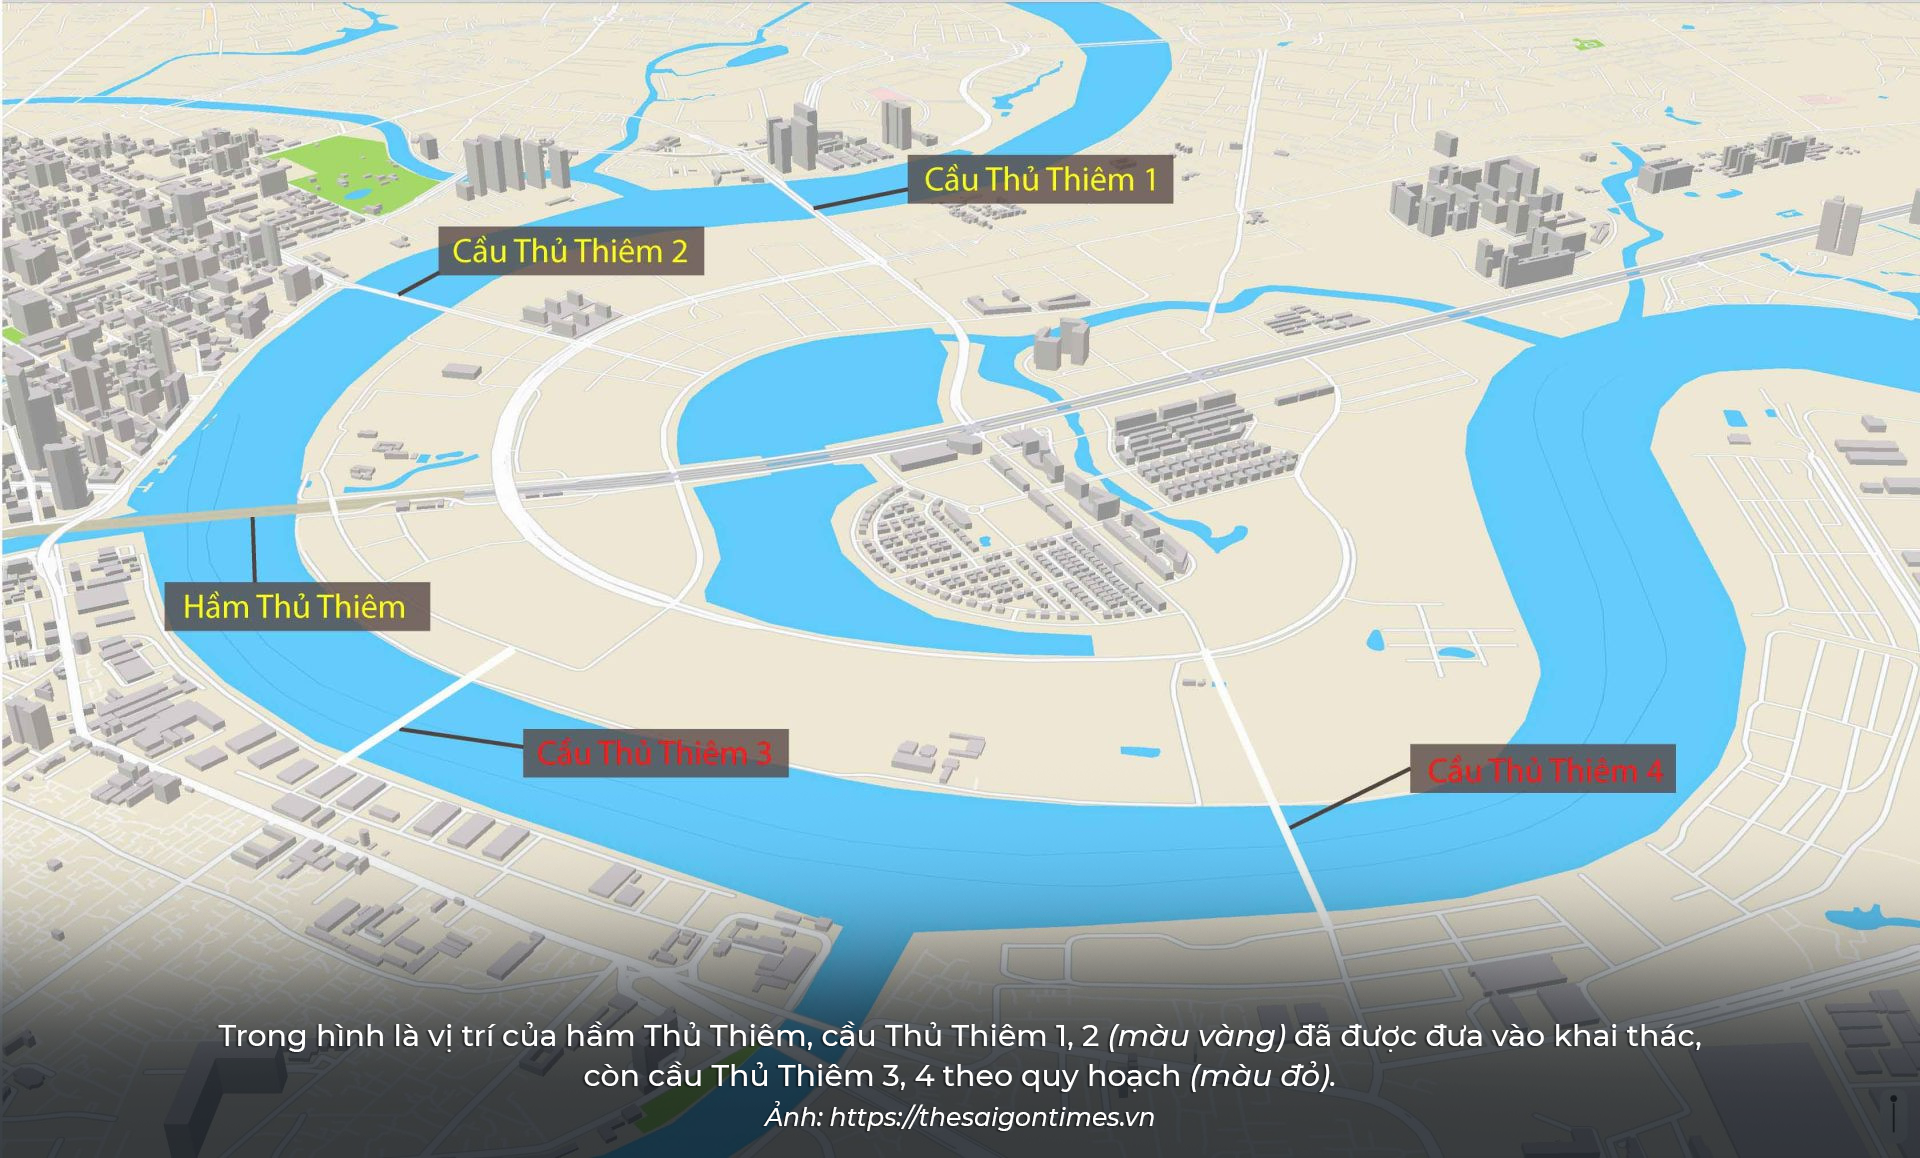 Theo quy hoạch, cầu Thủ Thiêm 4 sẽ được xây dựng từ đường Nguyễn Cơ Thạch (Thủ Đức) bắc qua sông Sài Gòn, nối vào đường Lưu Trọng Lư, quận 7.